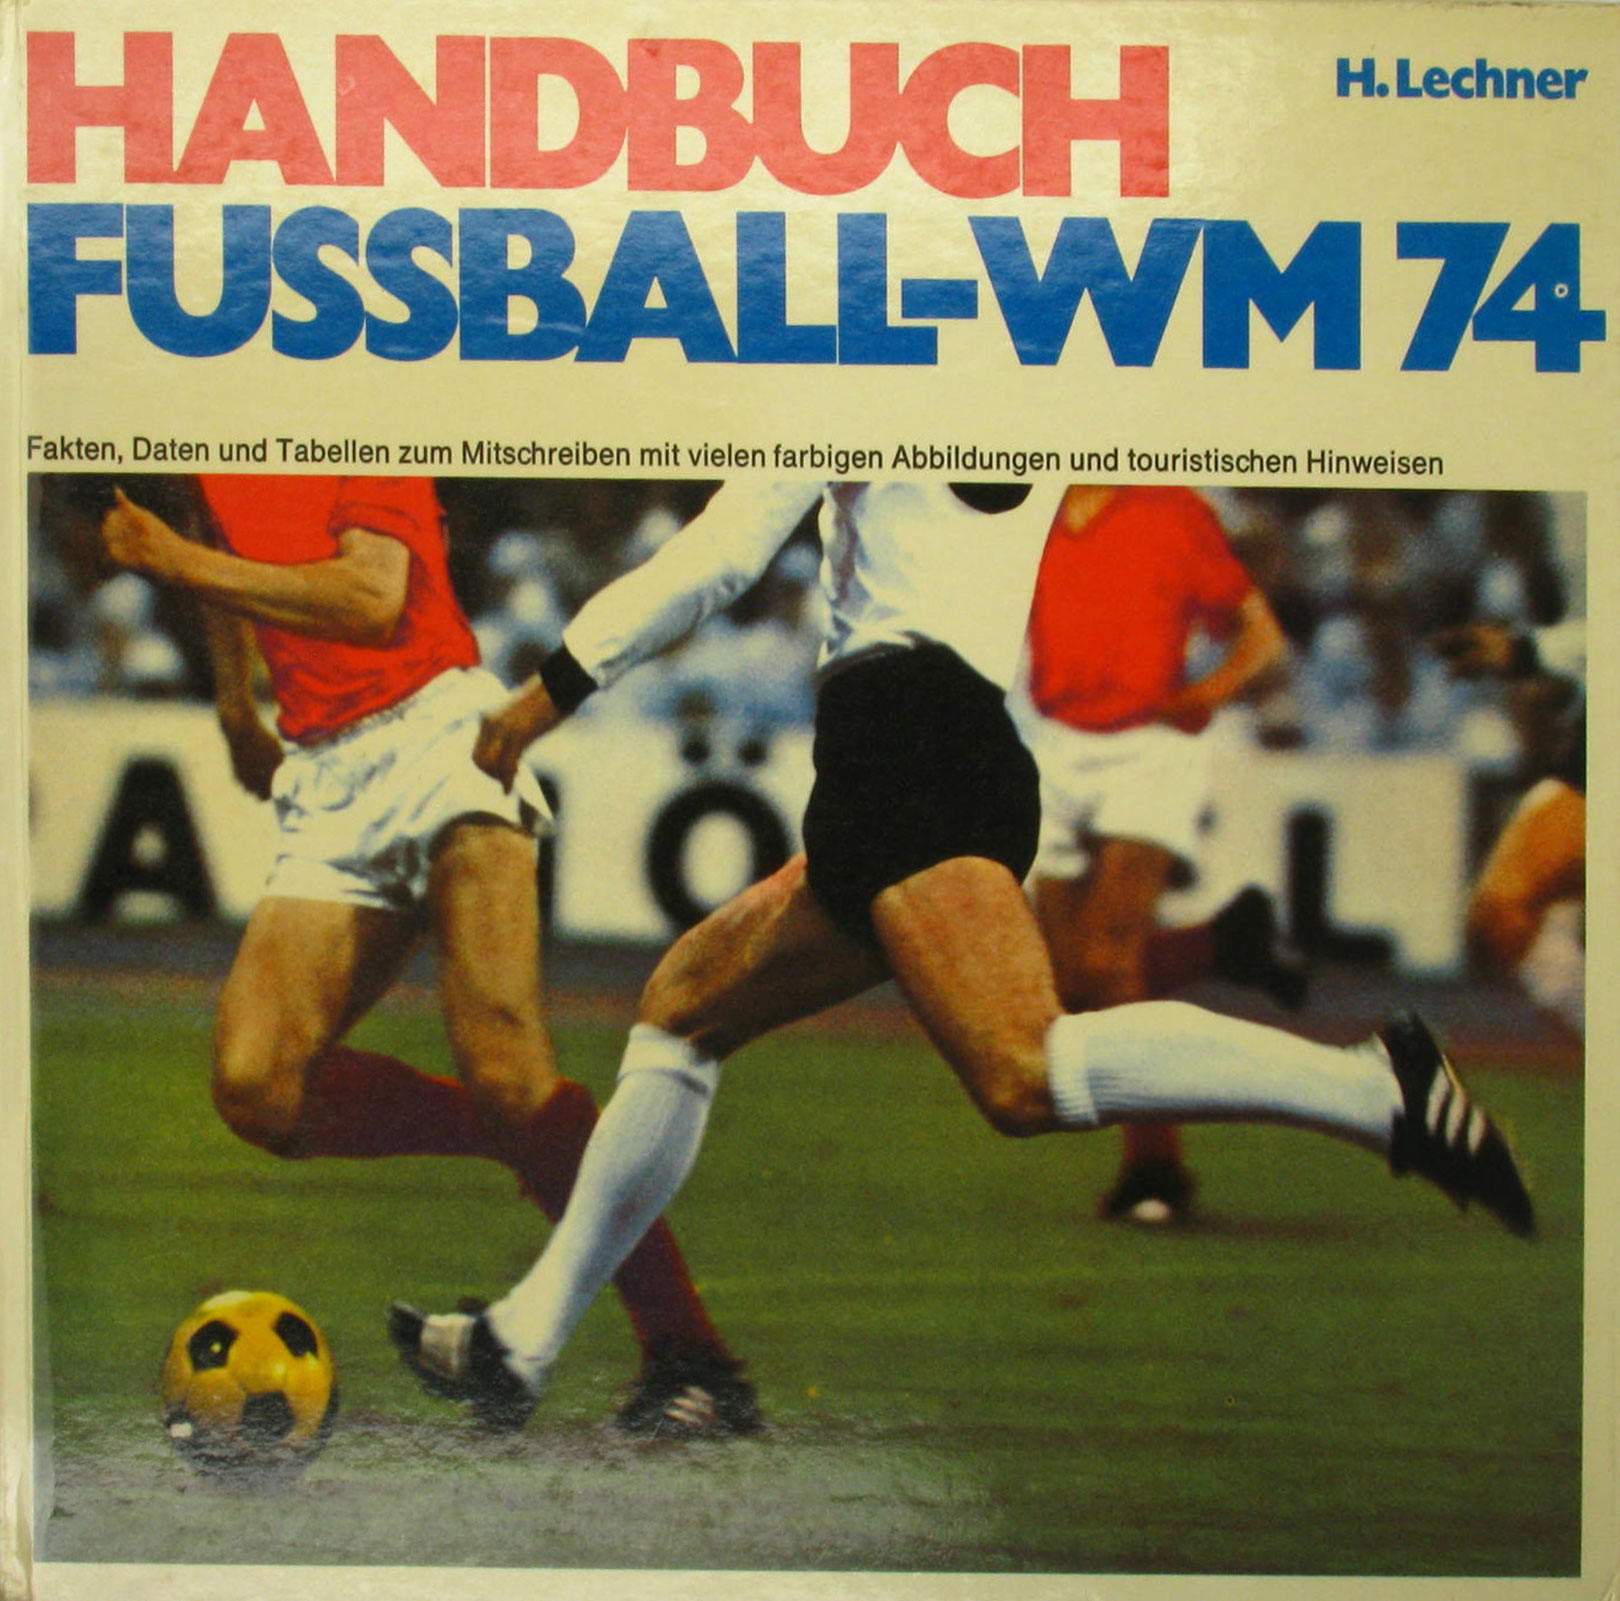 Lechner, Heribert:  Handbuch Fussball-WM 74. Fakten, Daten und Tabellen zum Mitschreiben mit vielen farbigen Abbildungen und touristischen Hinweisen. 